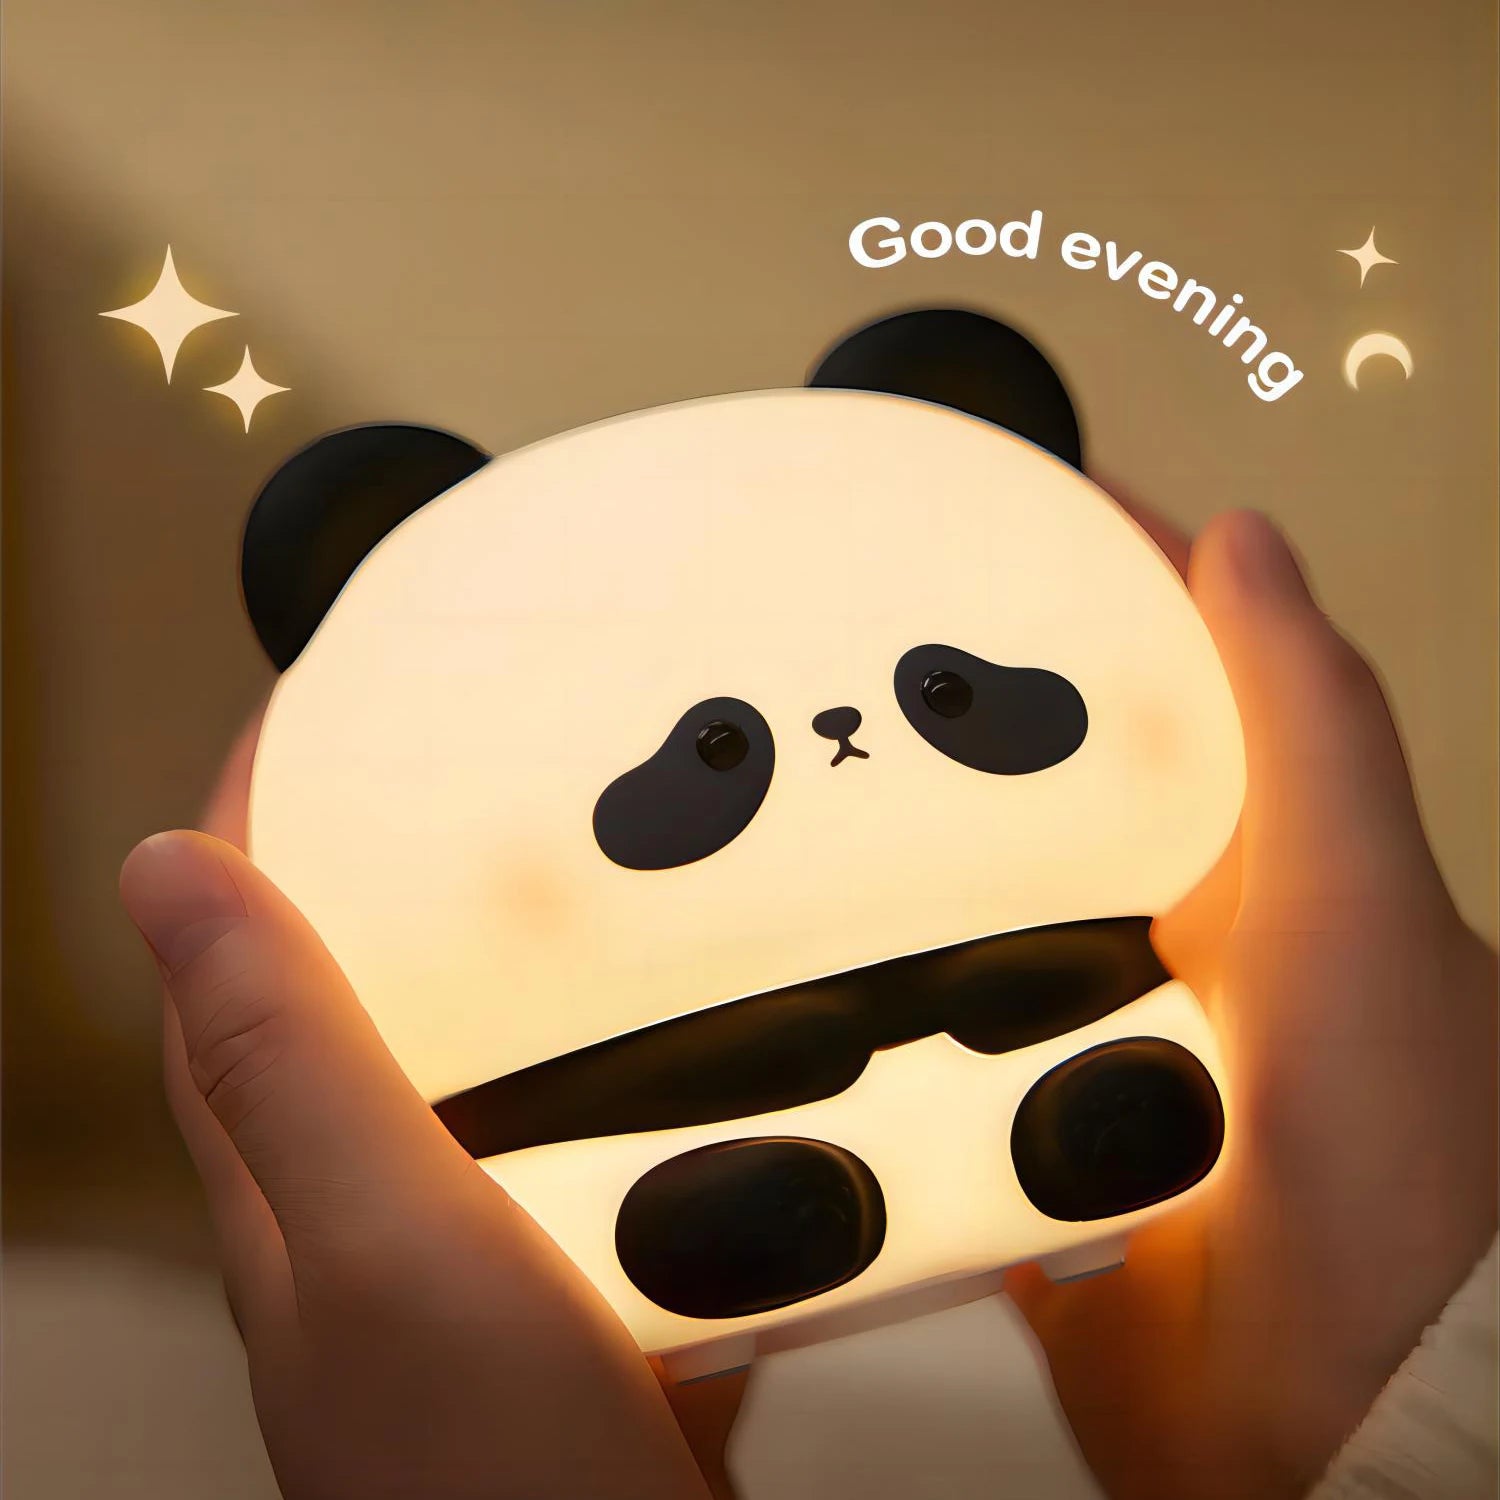 Sleepy Panda Night Lights